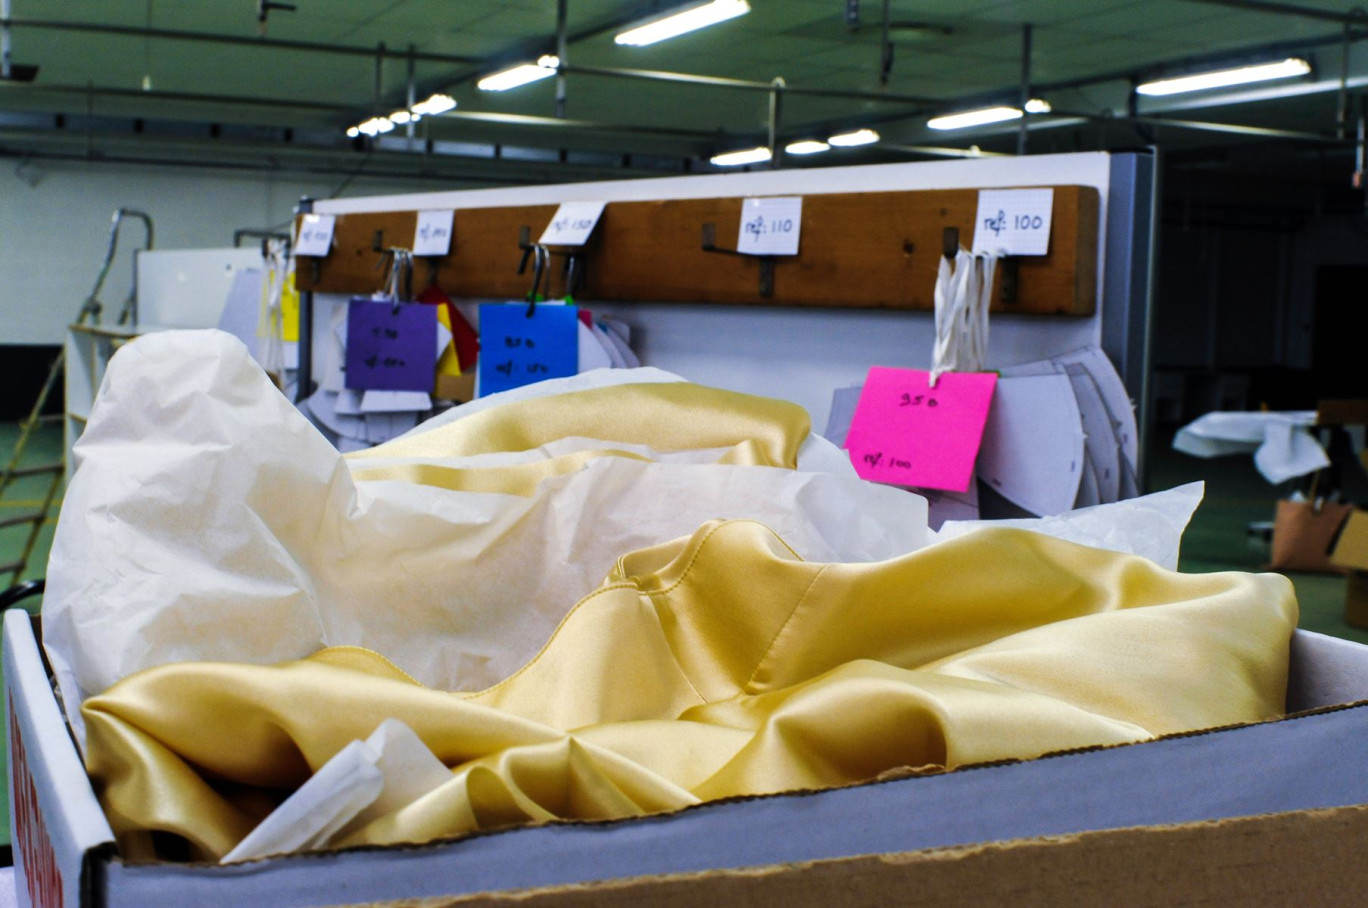 Une proposition de Règlement sur l’écoconception pour des produits durables vise notamment à réglementer les secteurs dépourvus de législation spécifique dans ce domaine tel le textile. © berjotoff